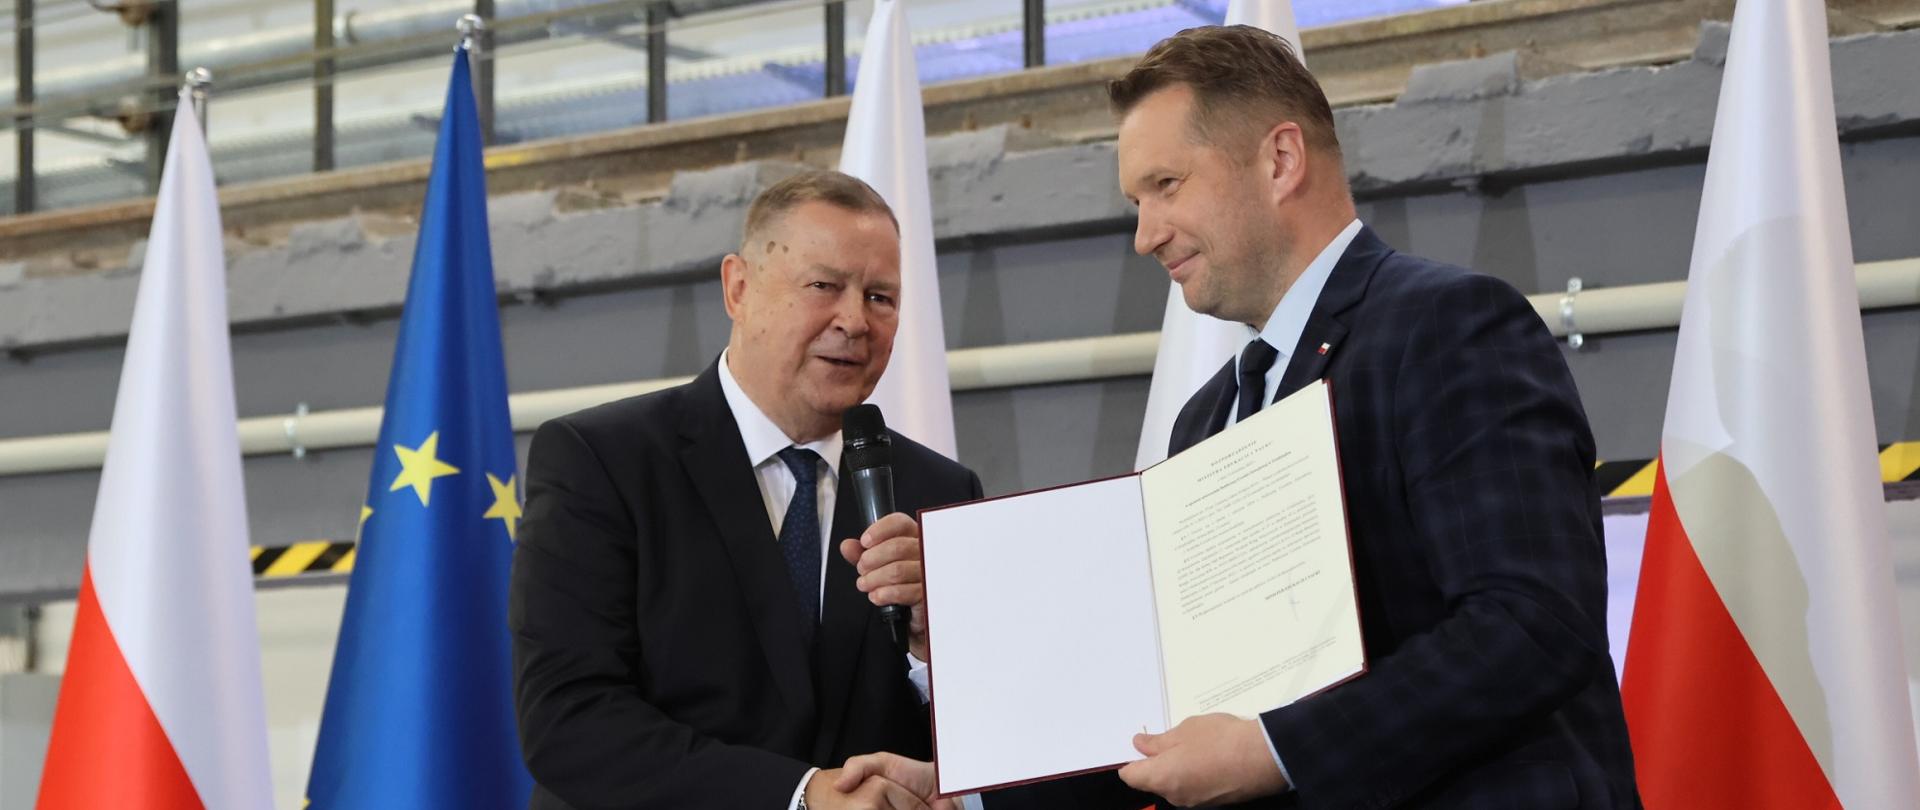 Minister Czarnek trzyma otwartą teczkę, ściska rękę stojącemu obok mężczyźnie w garniturze, za nimi kilka polskich flag.